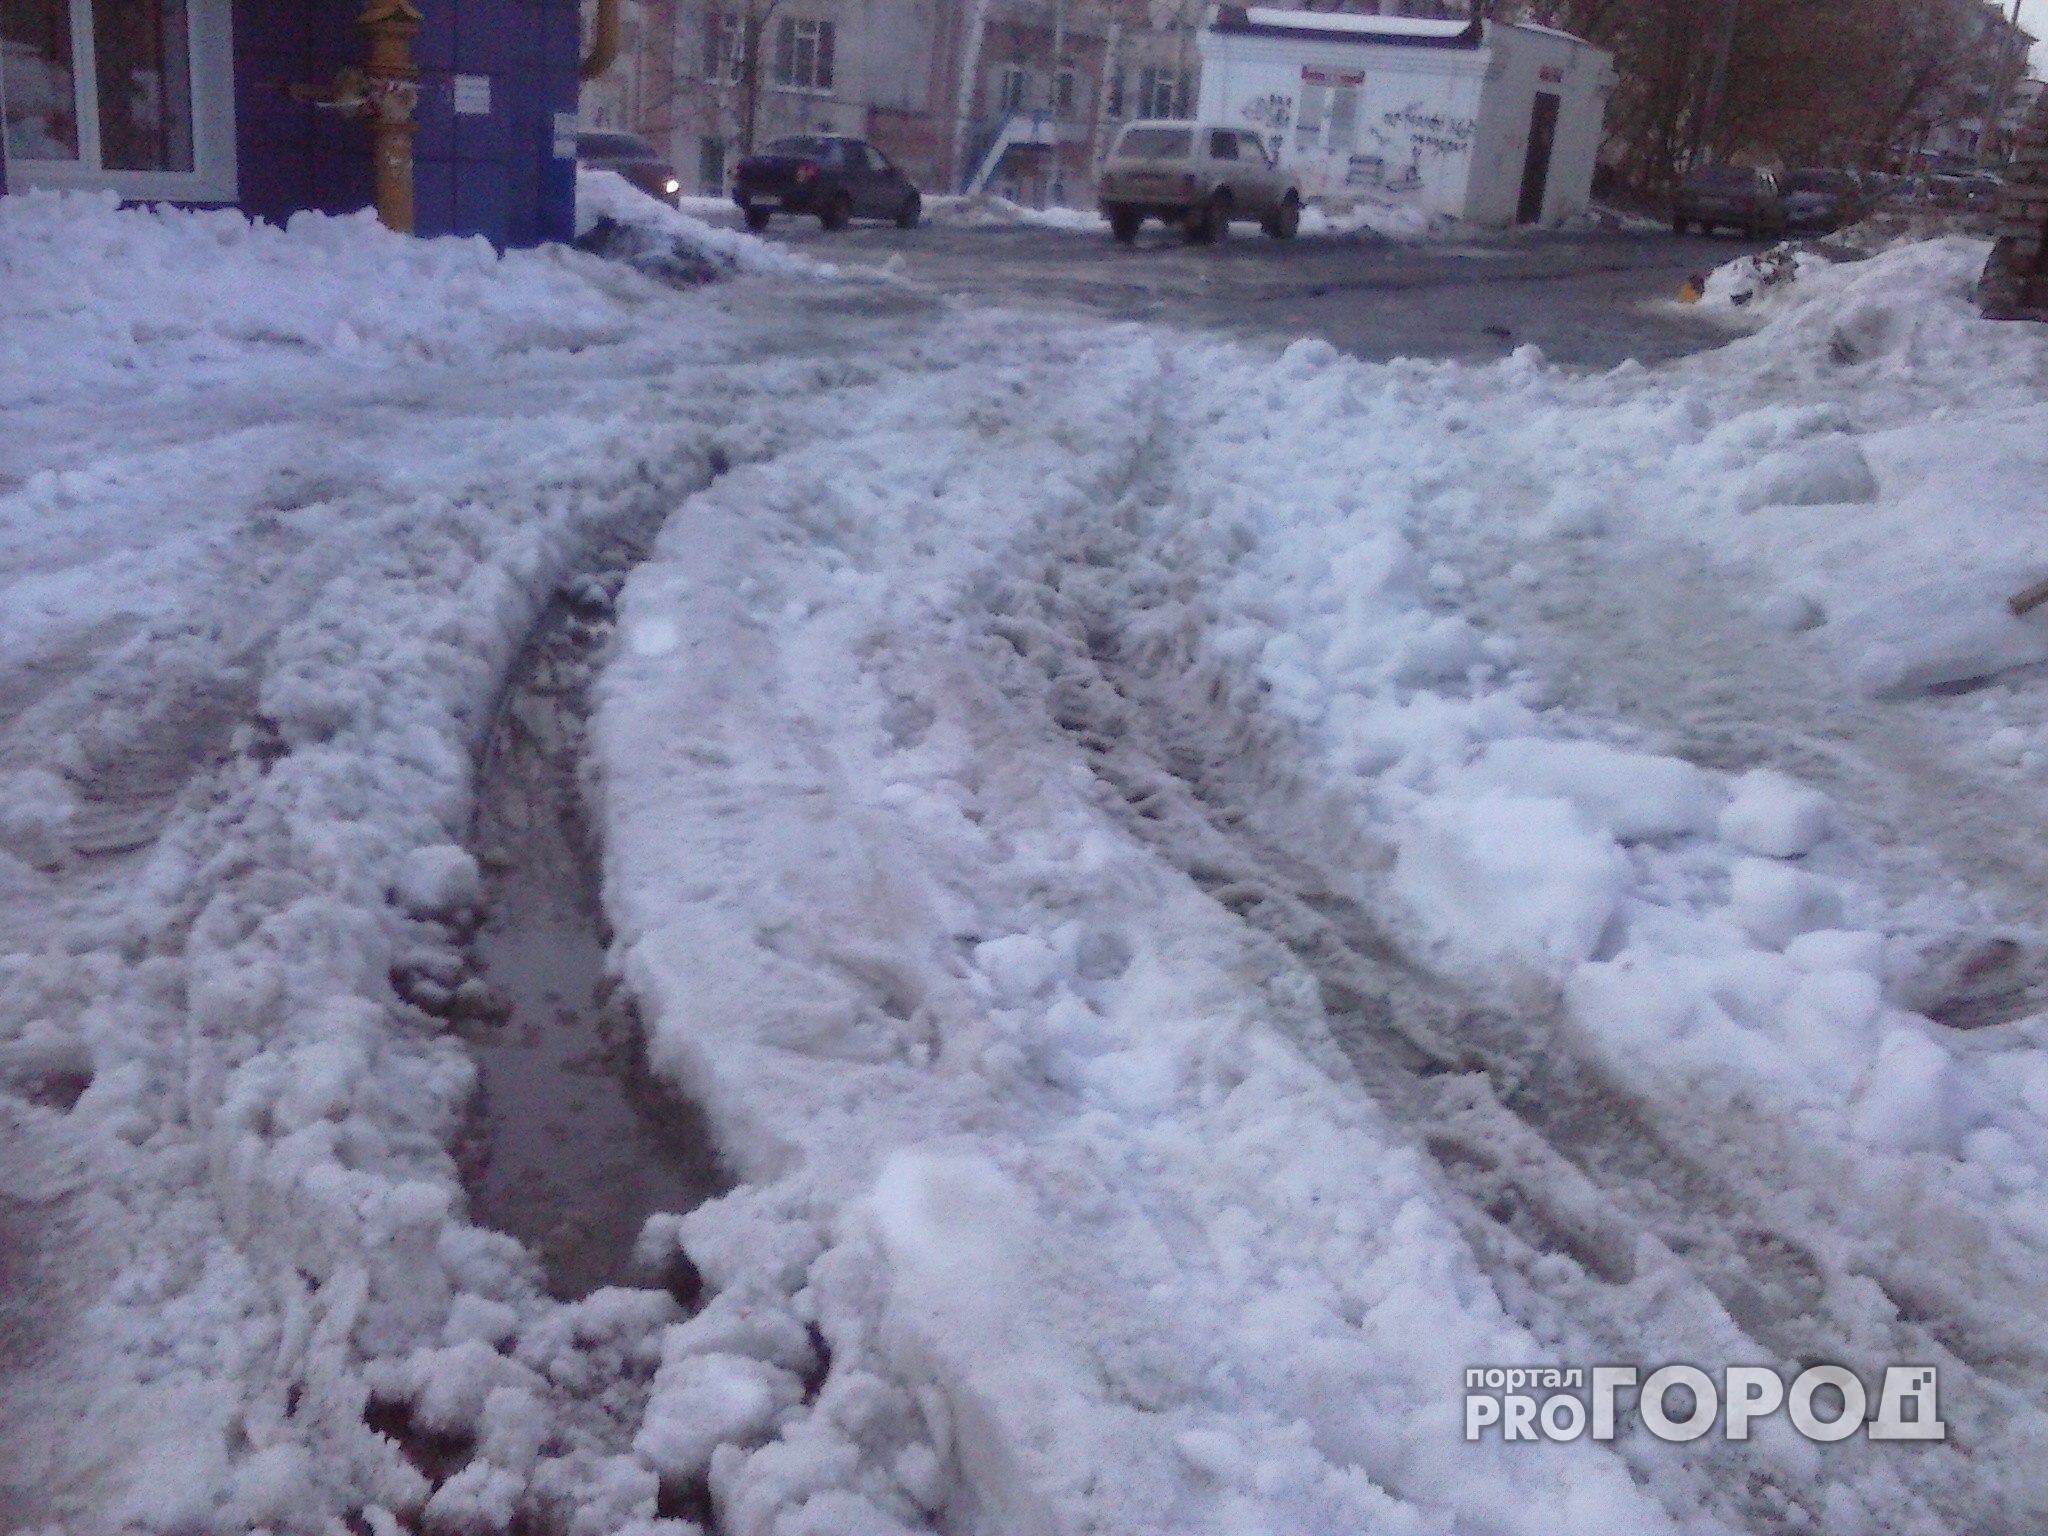 Йошкаролинцы возмущены: сотрудники МЧС закидали снегом дорогу во дворе